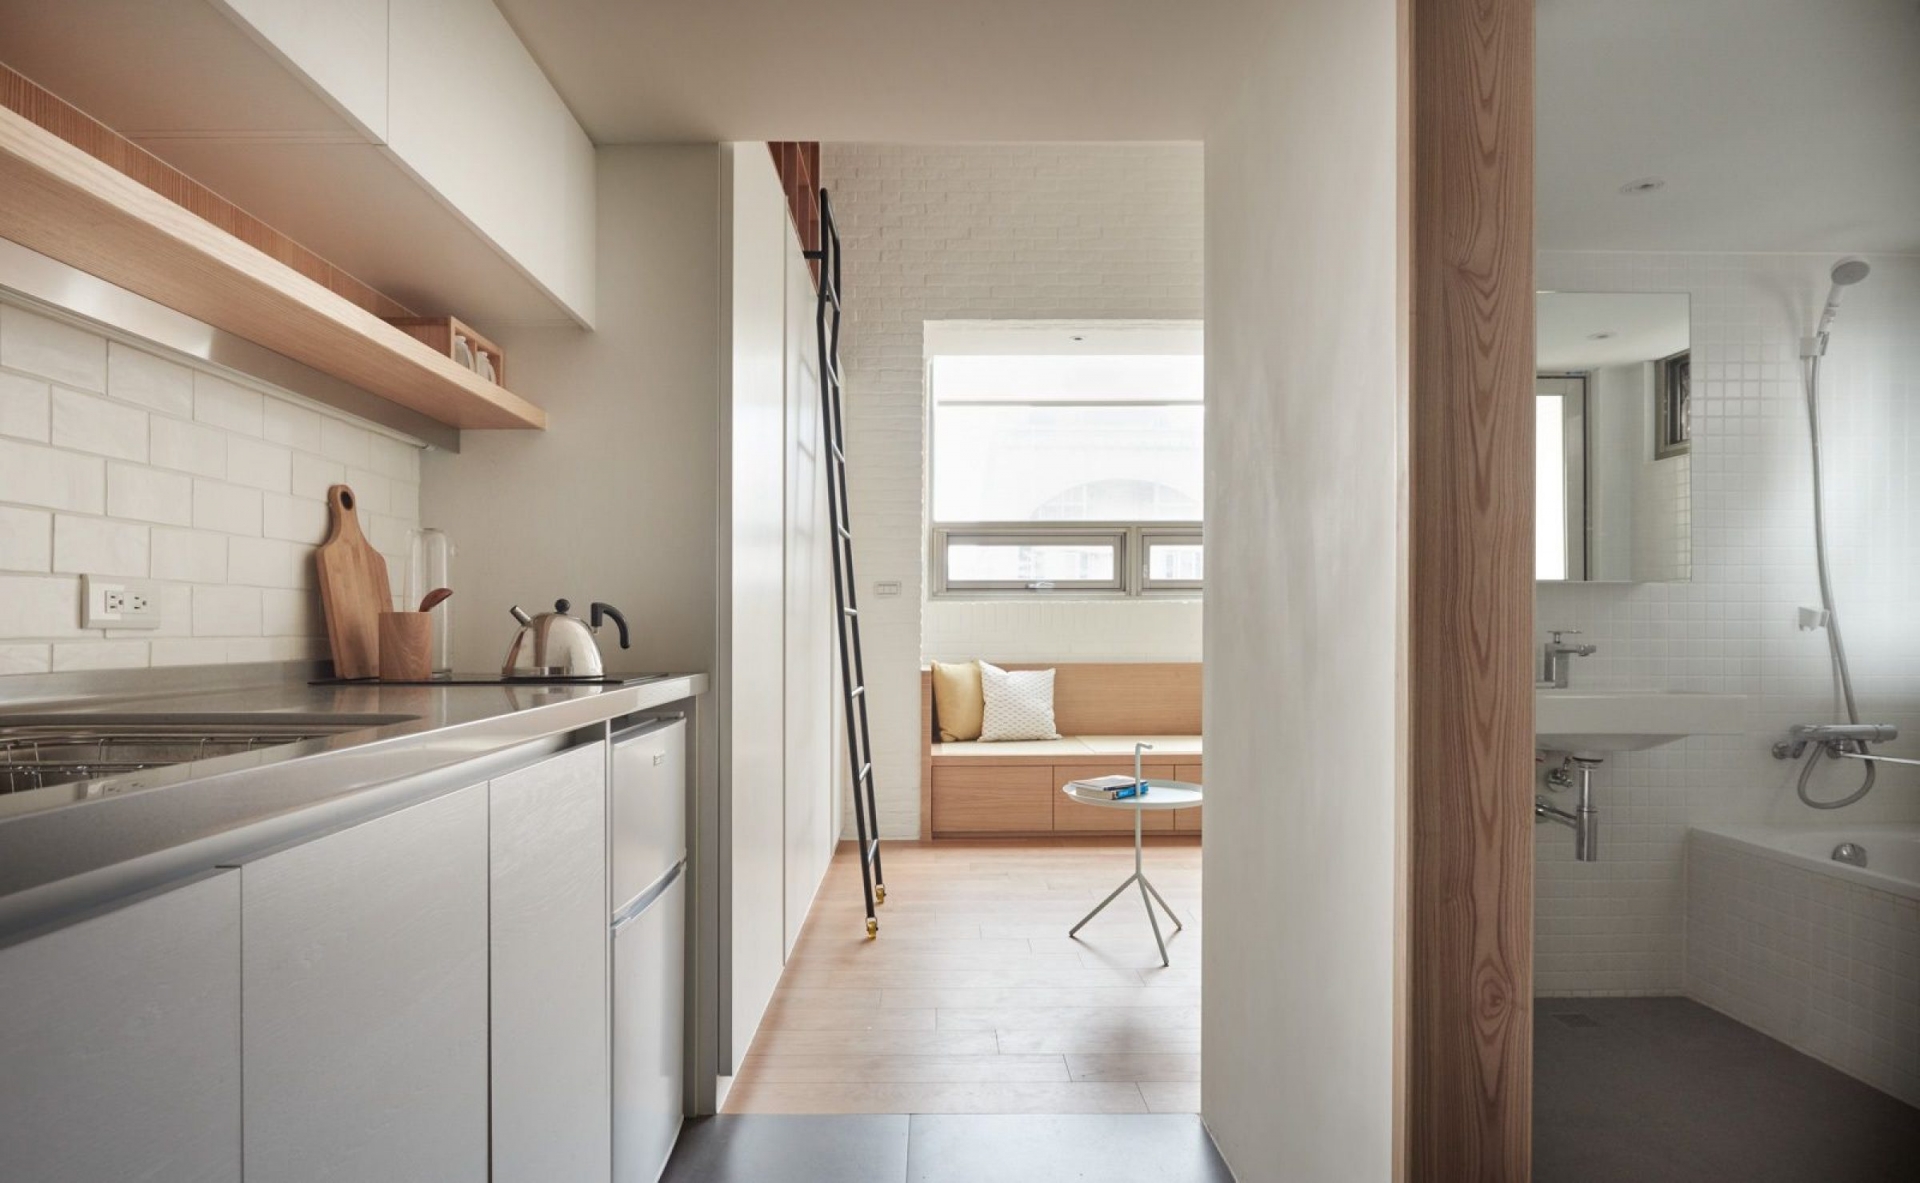 Trở xuống tầng dưới của căn hộ, bạn sẽ thấy phòng tắm được đặt song song với phòng bếp nhưng cách nhau vách ngăn bằng gỗ với lớp sơn bề mặt màu trắng.